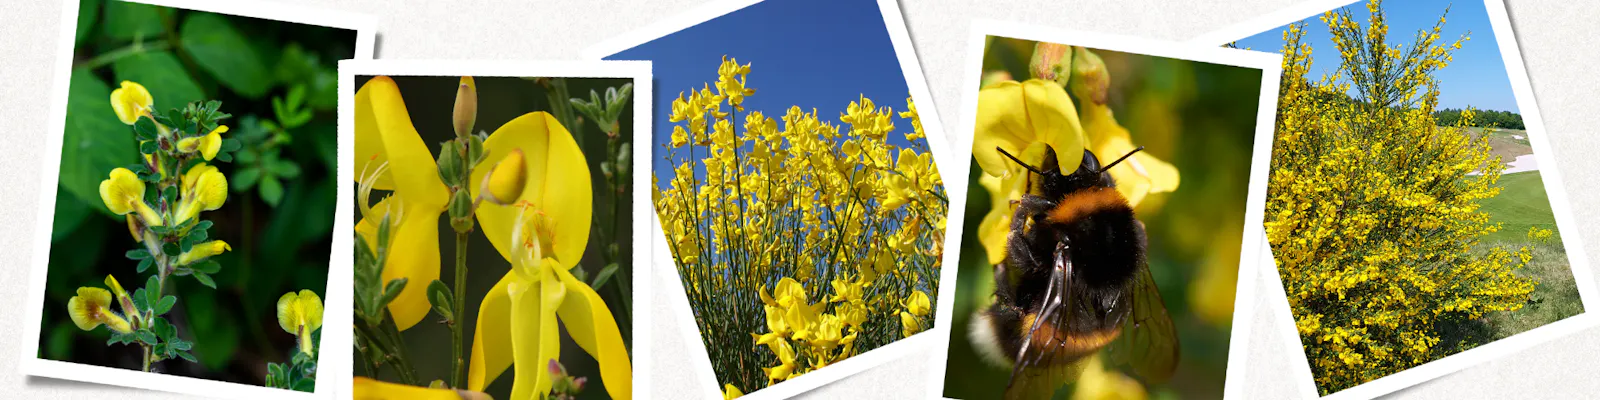 Besenginster Cytisus scoparius verschiedene Ansichten mit Blüte und Strauch in natur